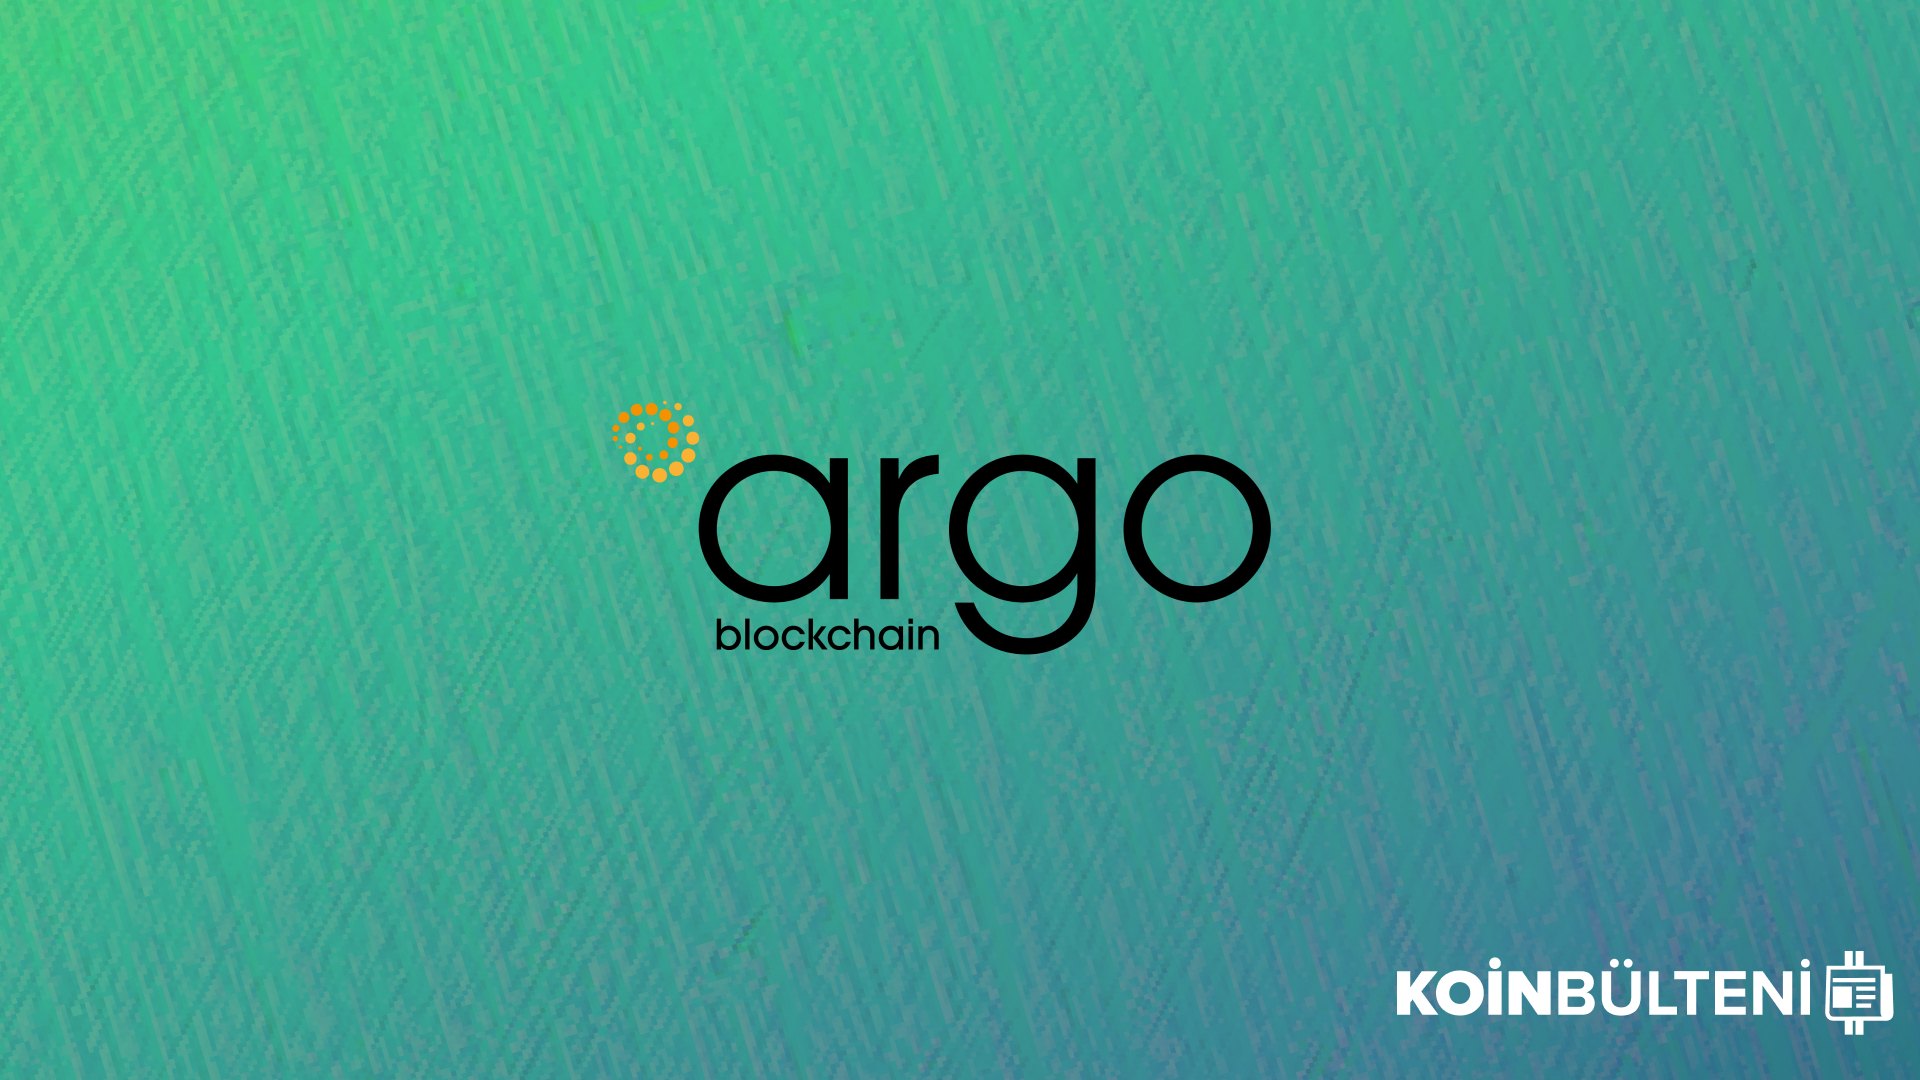 argo-blockchain-koin-bulteni